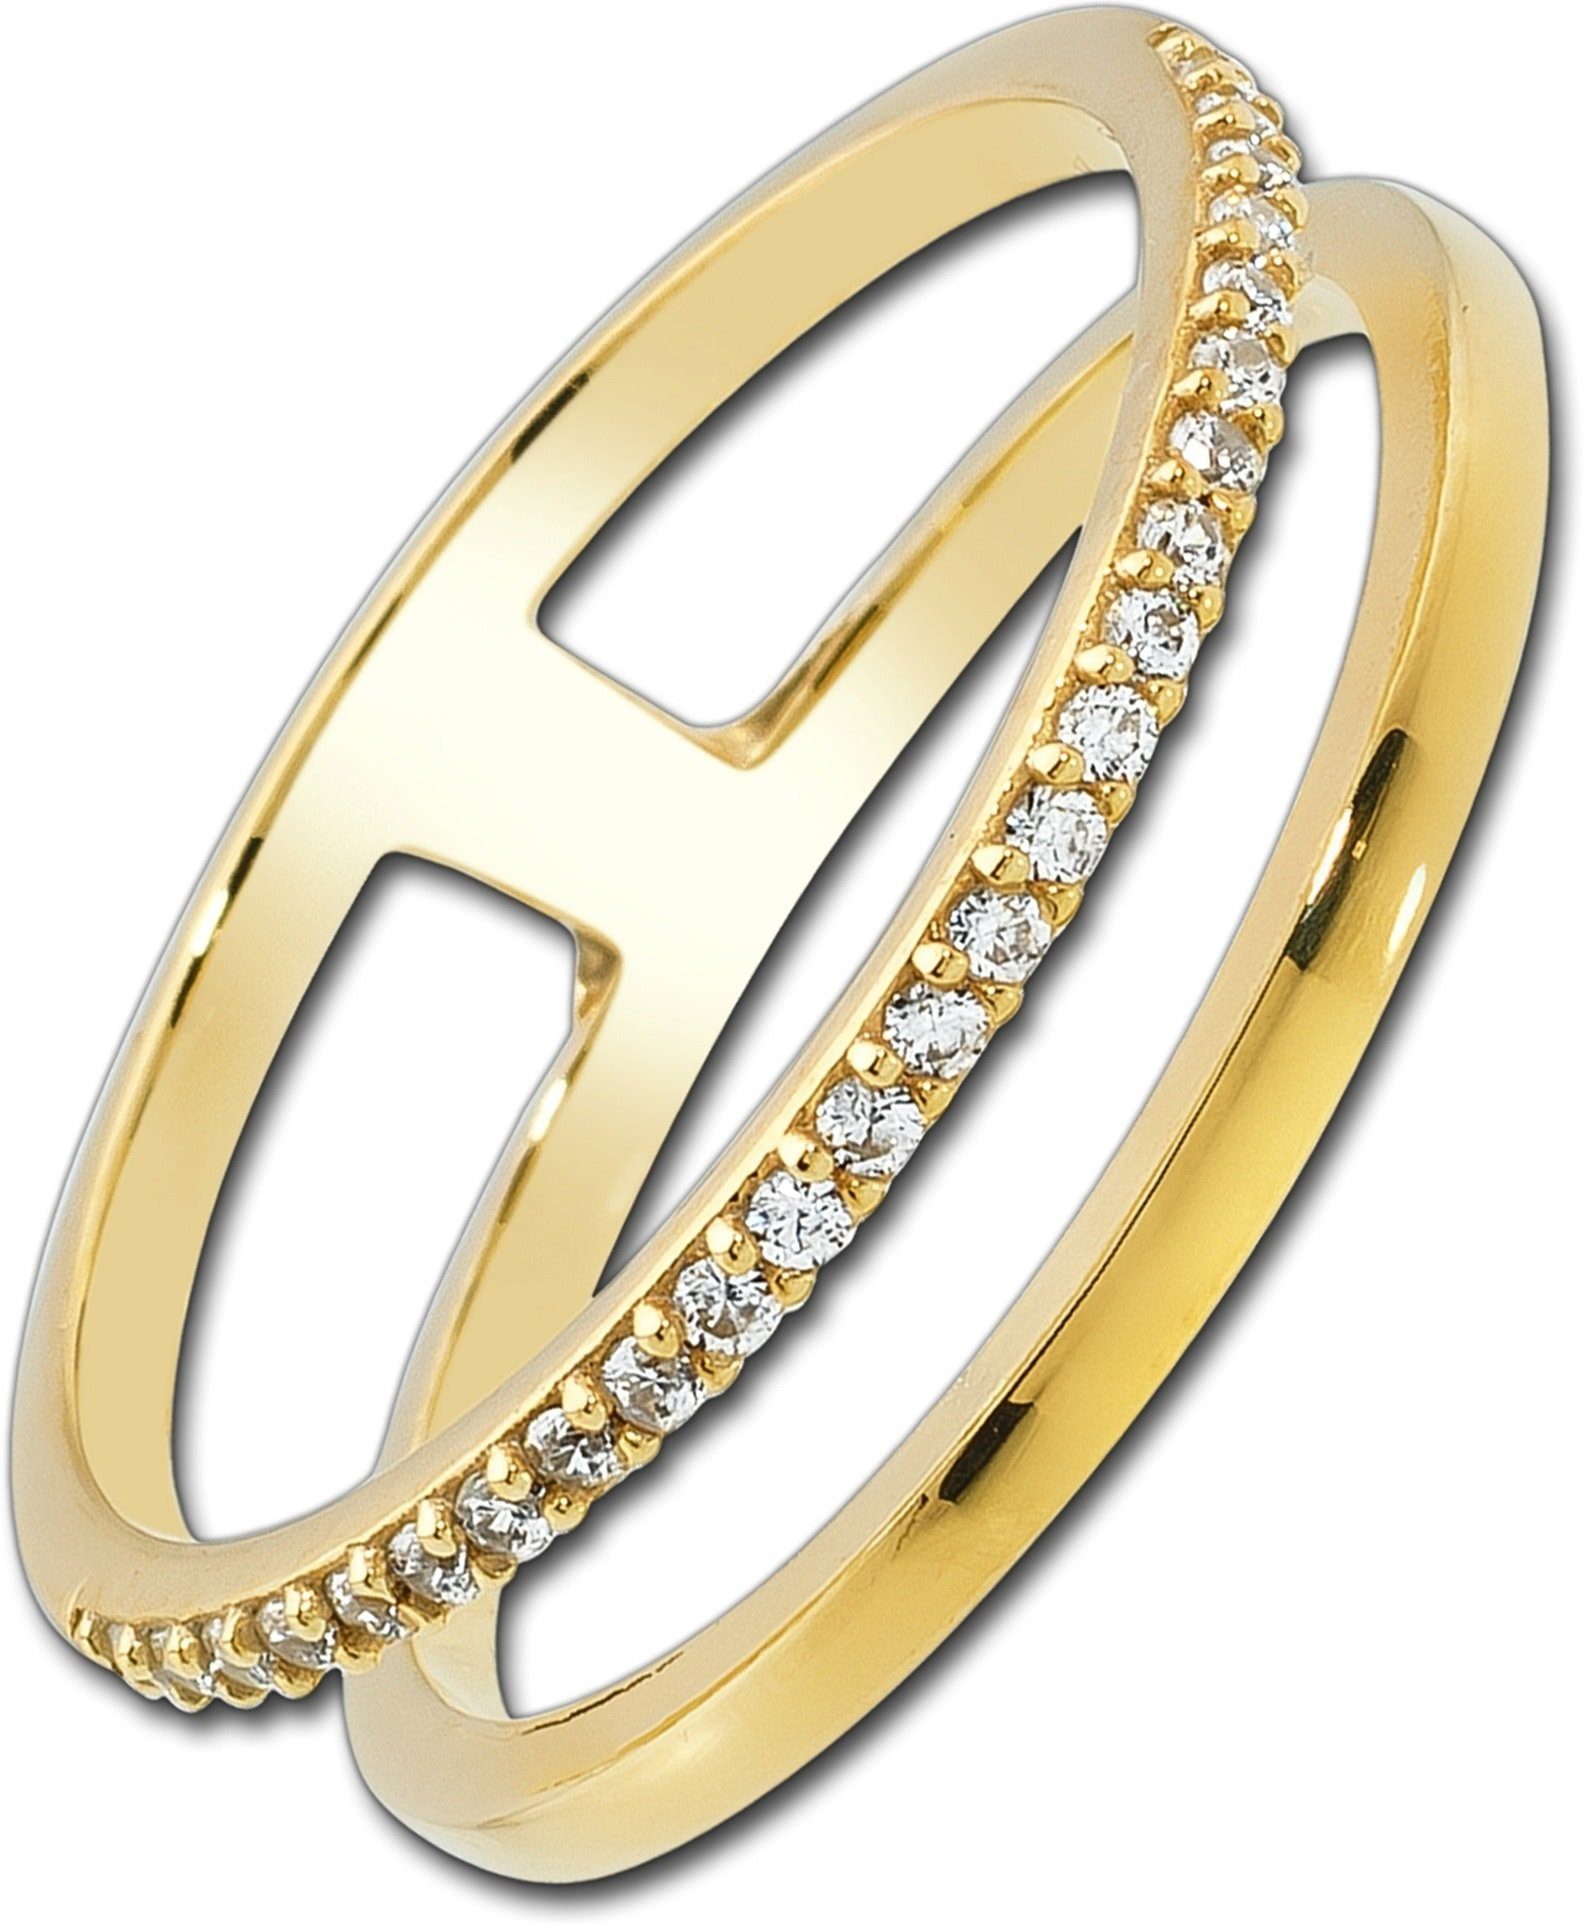 Balia Goldring Balia Ring für Damen 333 Gelbgold (Fingerring), Fingerring Größe 60 (19,1), 333 Gelbgold - 8 Karat (Doppel gold) Gold